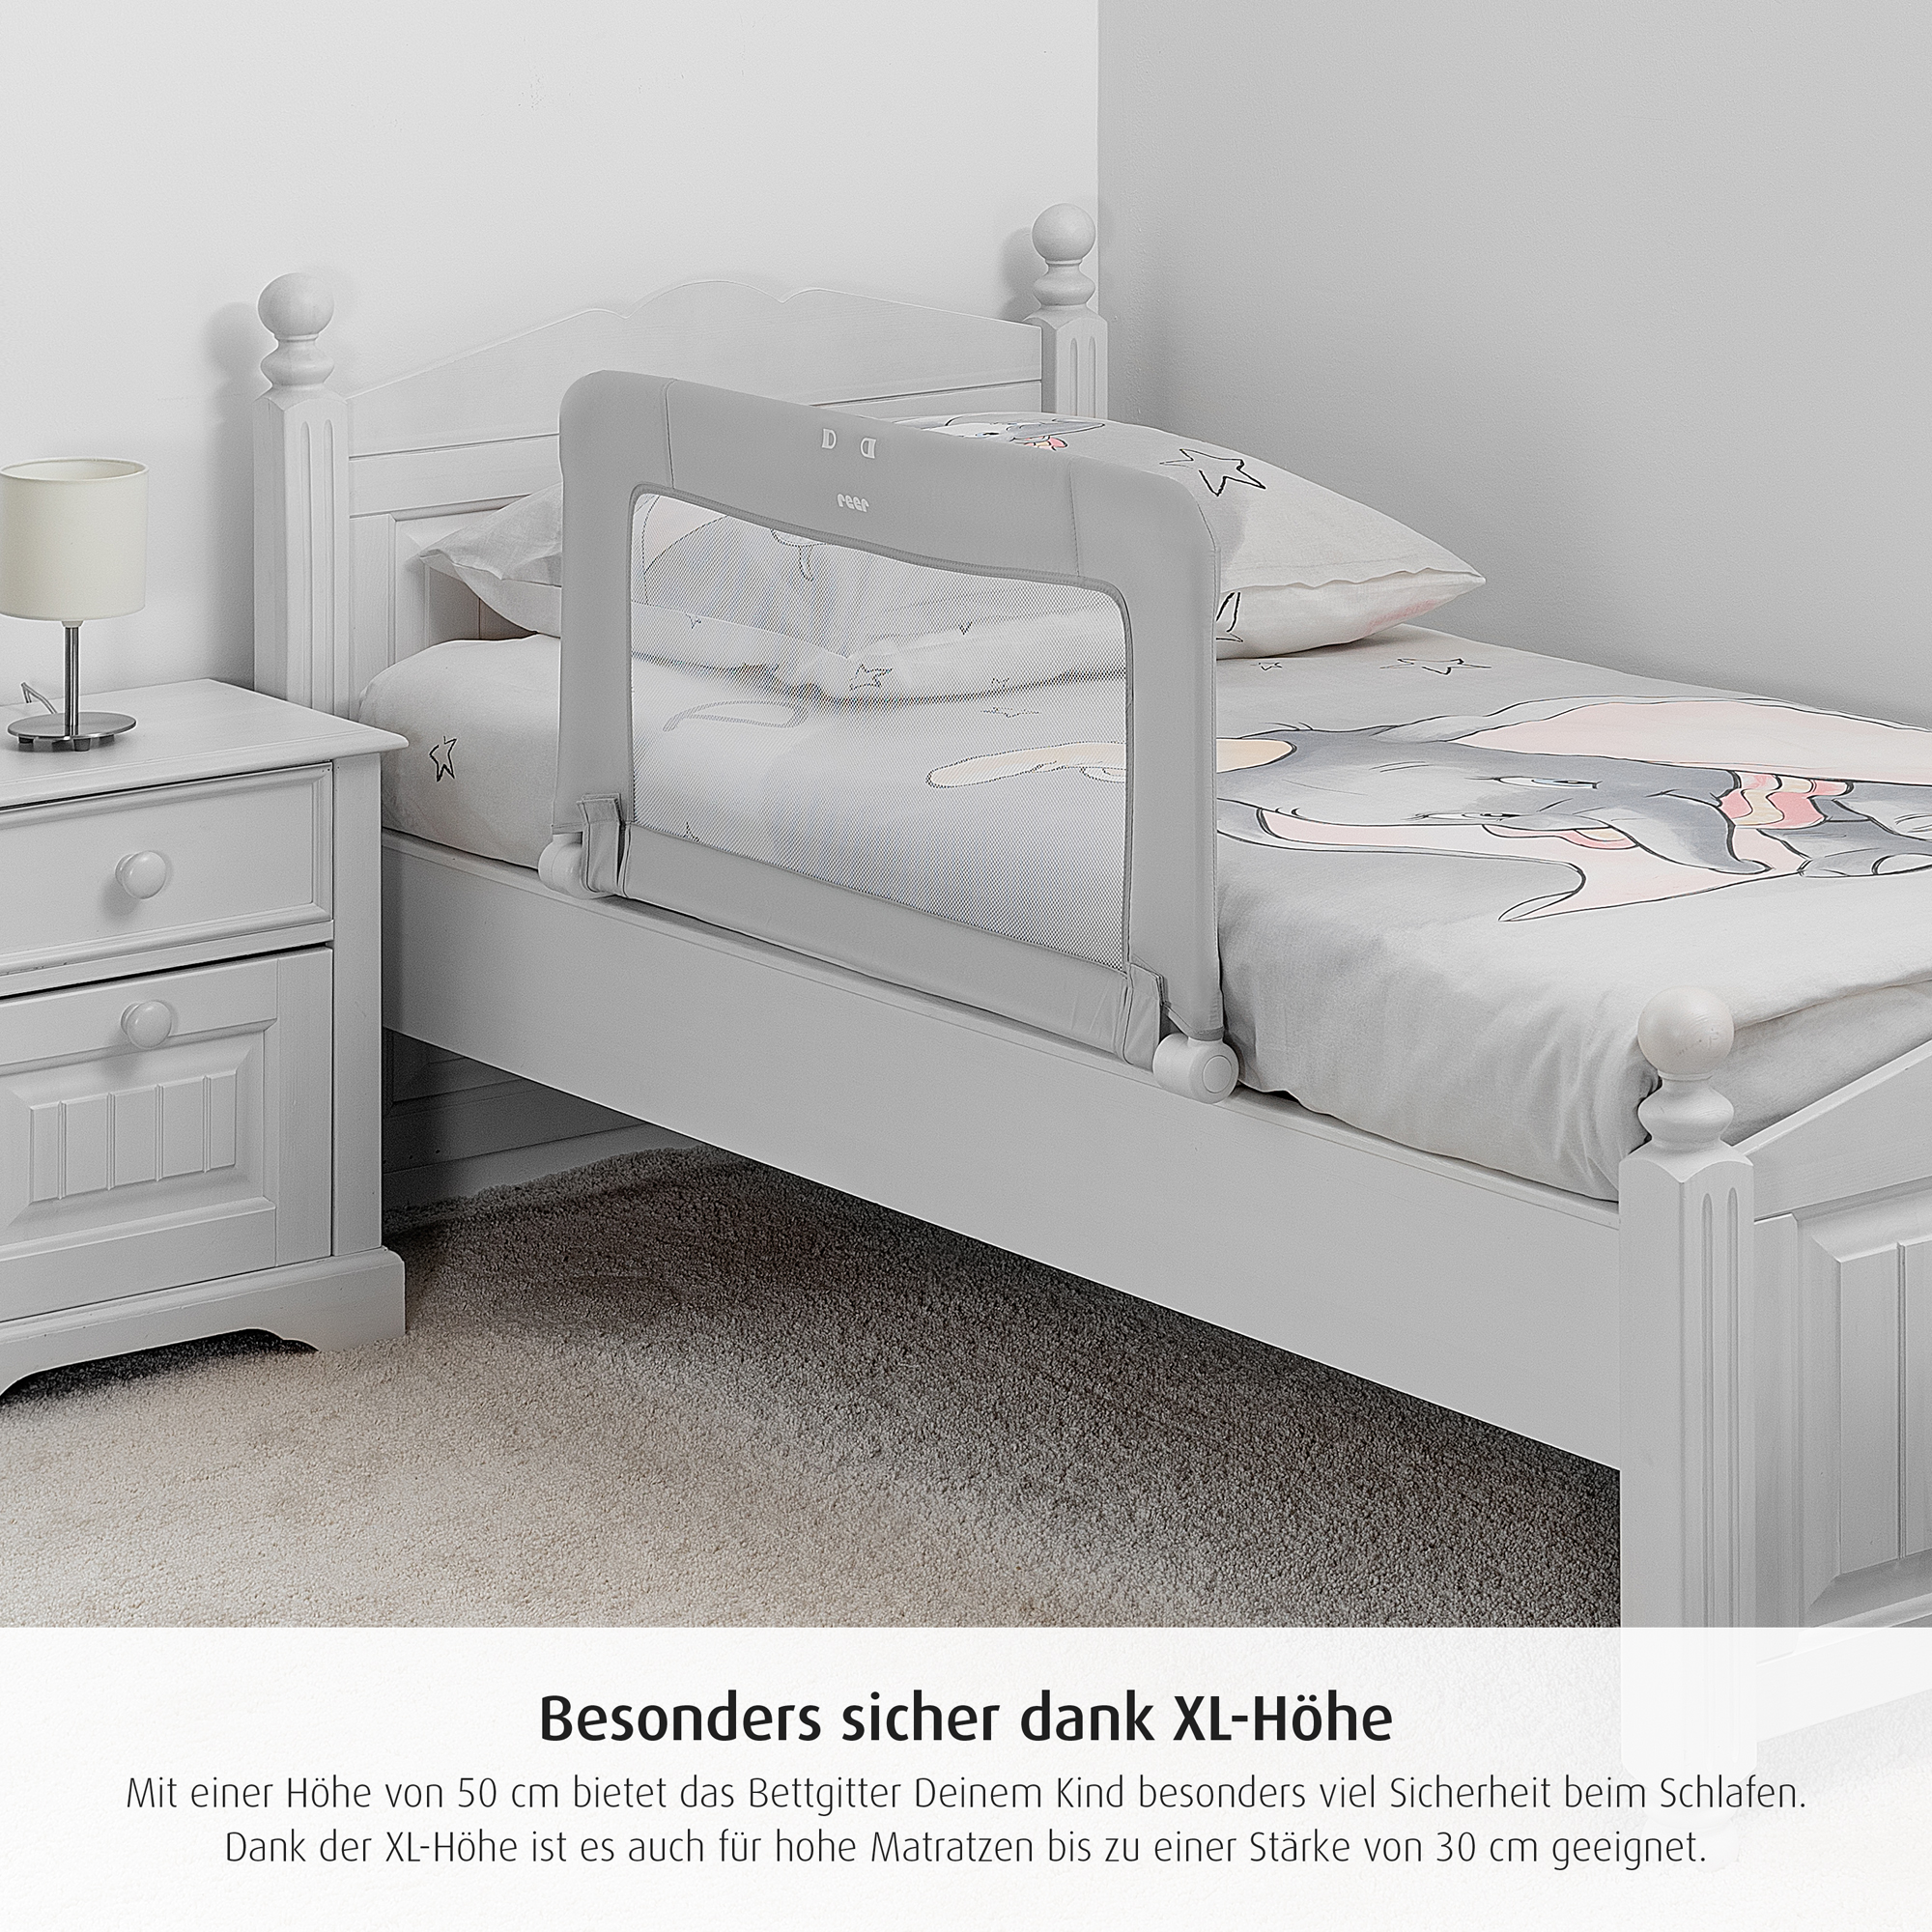 ByMySide Bettgitter mit Abklappfunktion, für Betten mit einer Länge von 180 - 210 cm